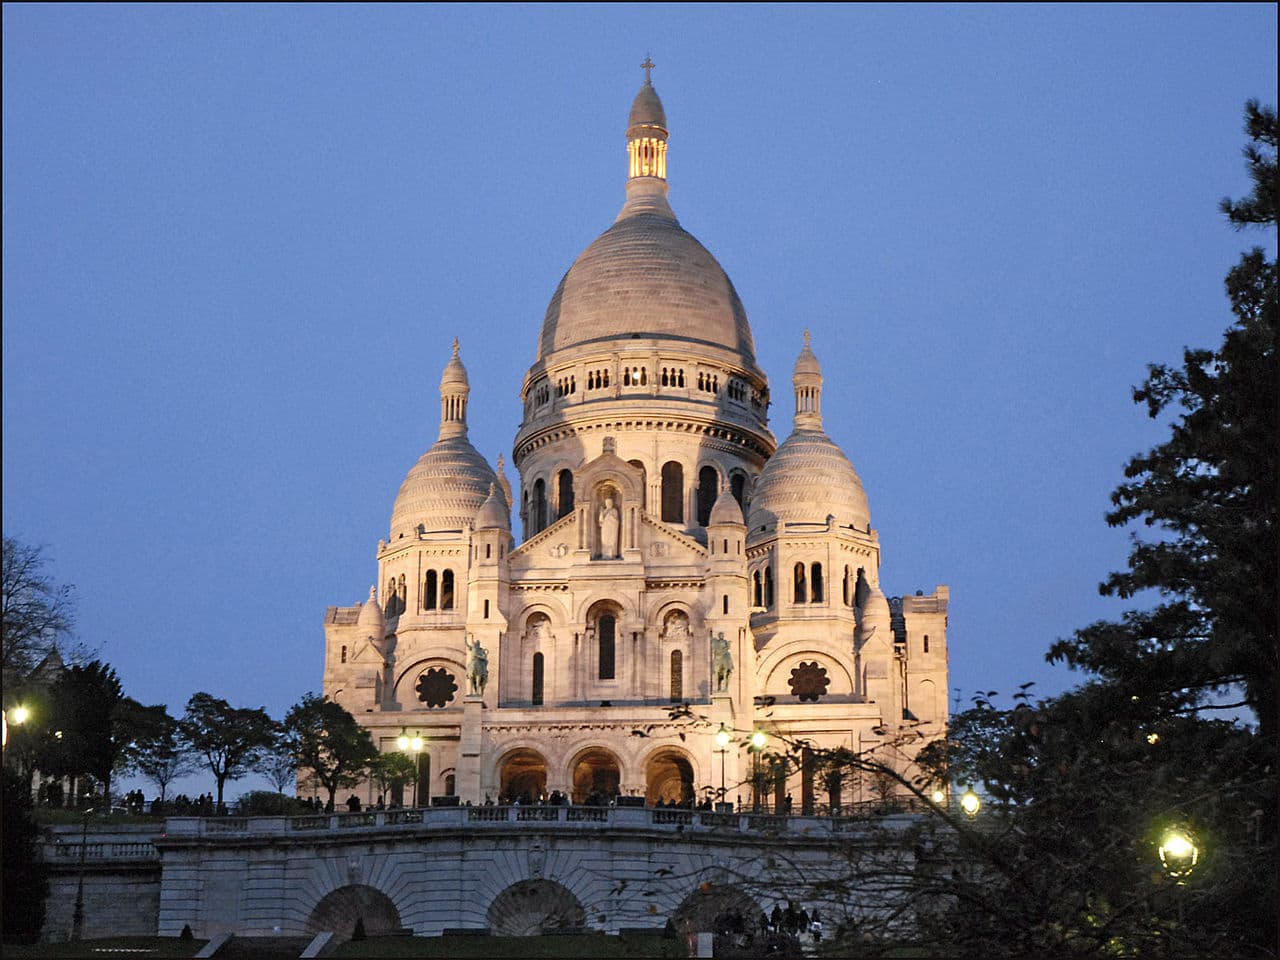 Sacre-Coeur - Top 10 Things To Do in Paris